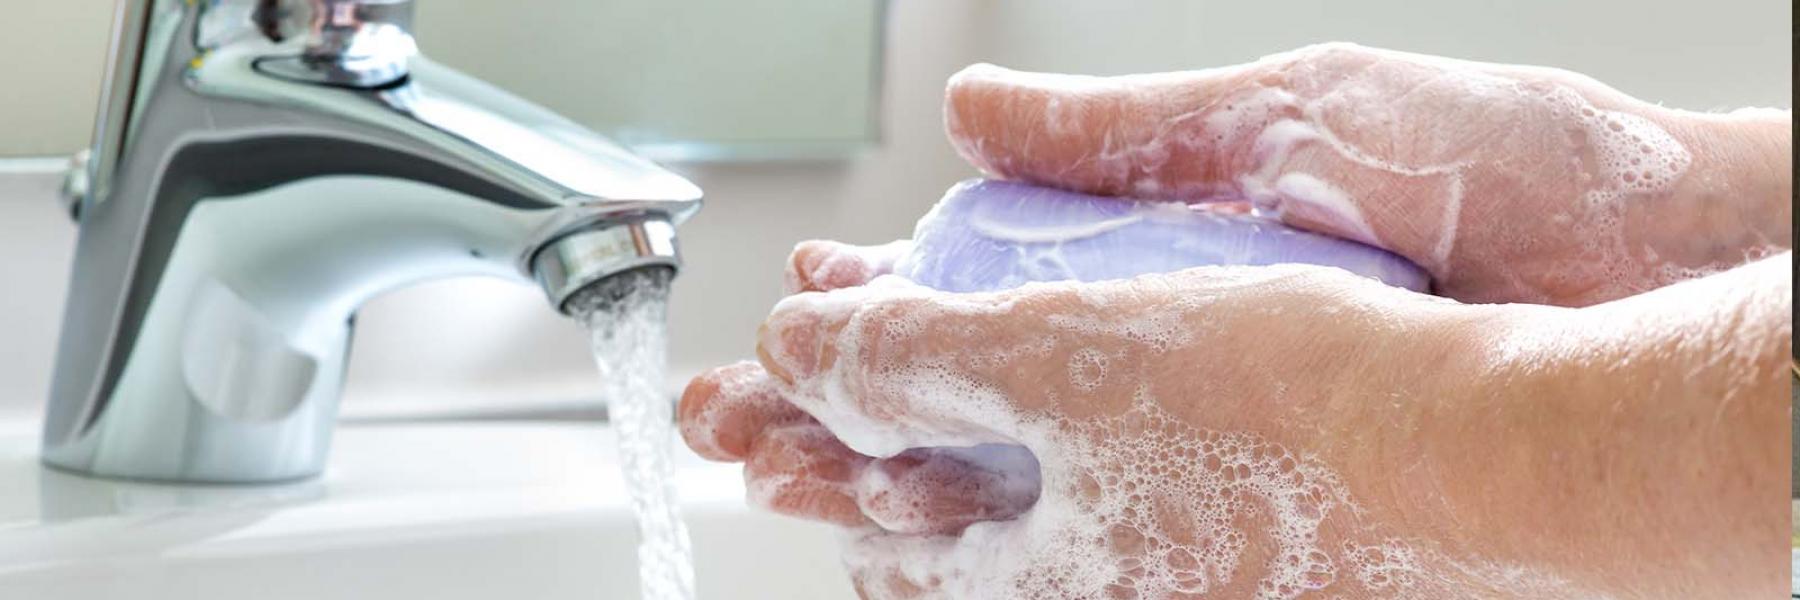 للوقاية من كورونا.. إليك الطريقة الصحيحة لغسل اليدين في 6 خطوات (صورة)